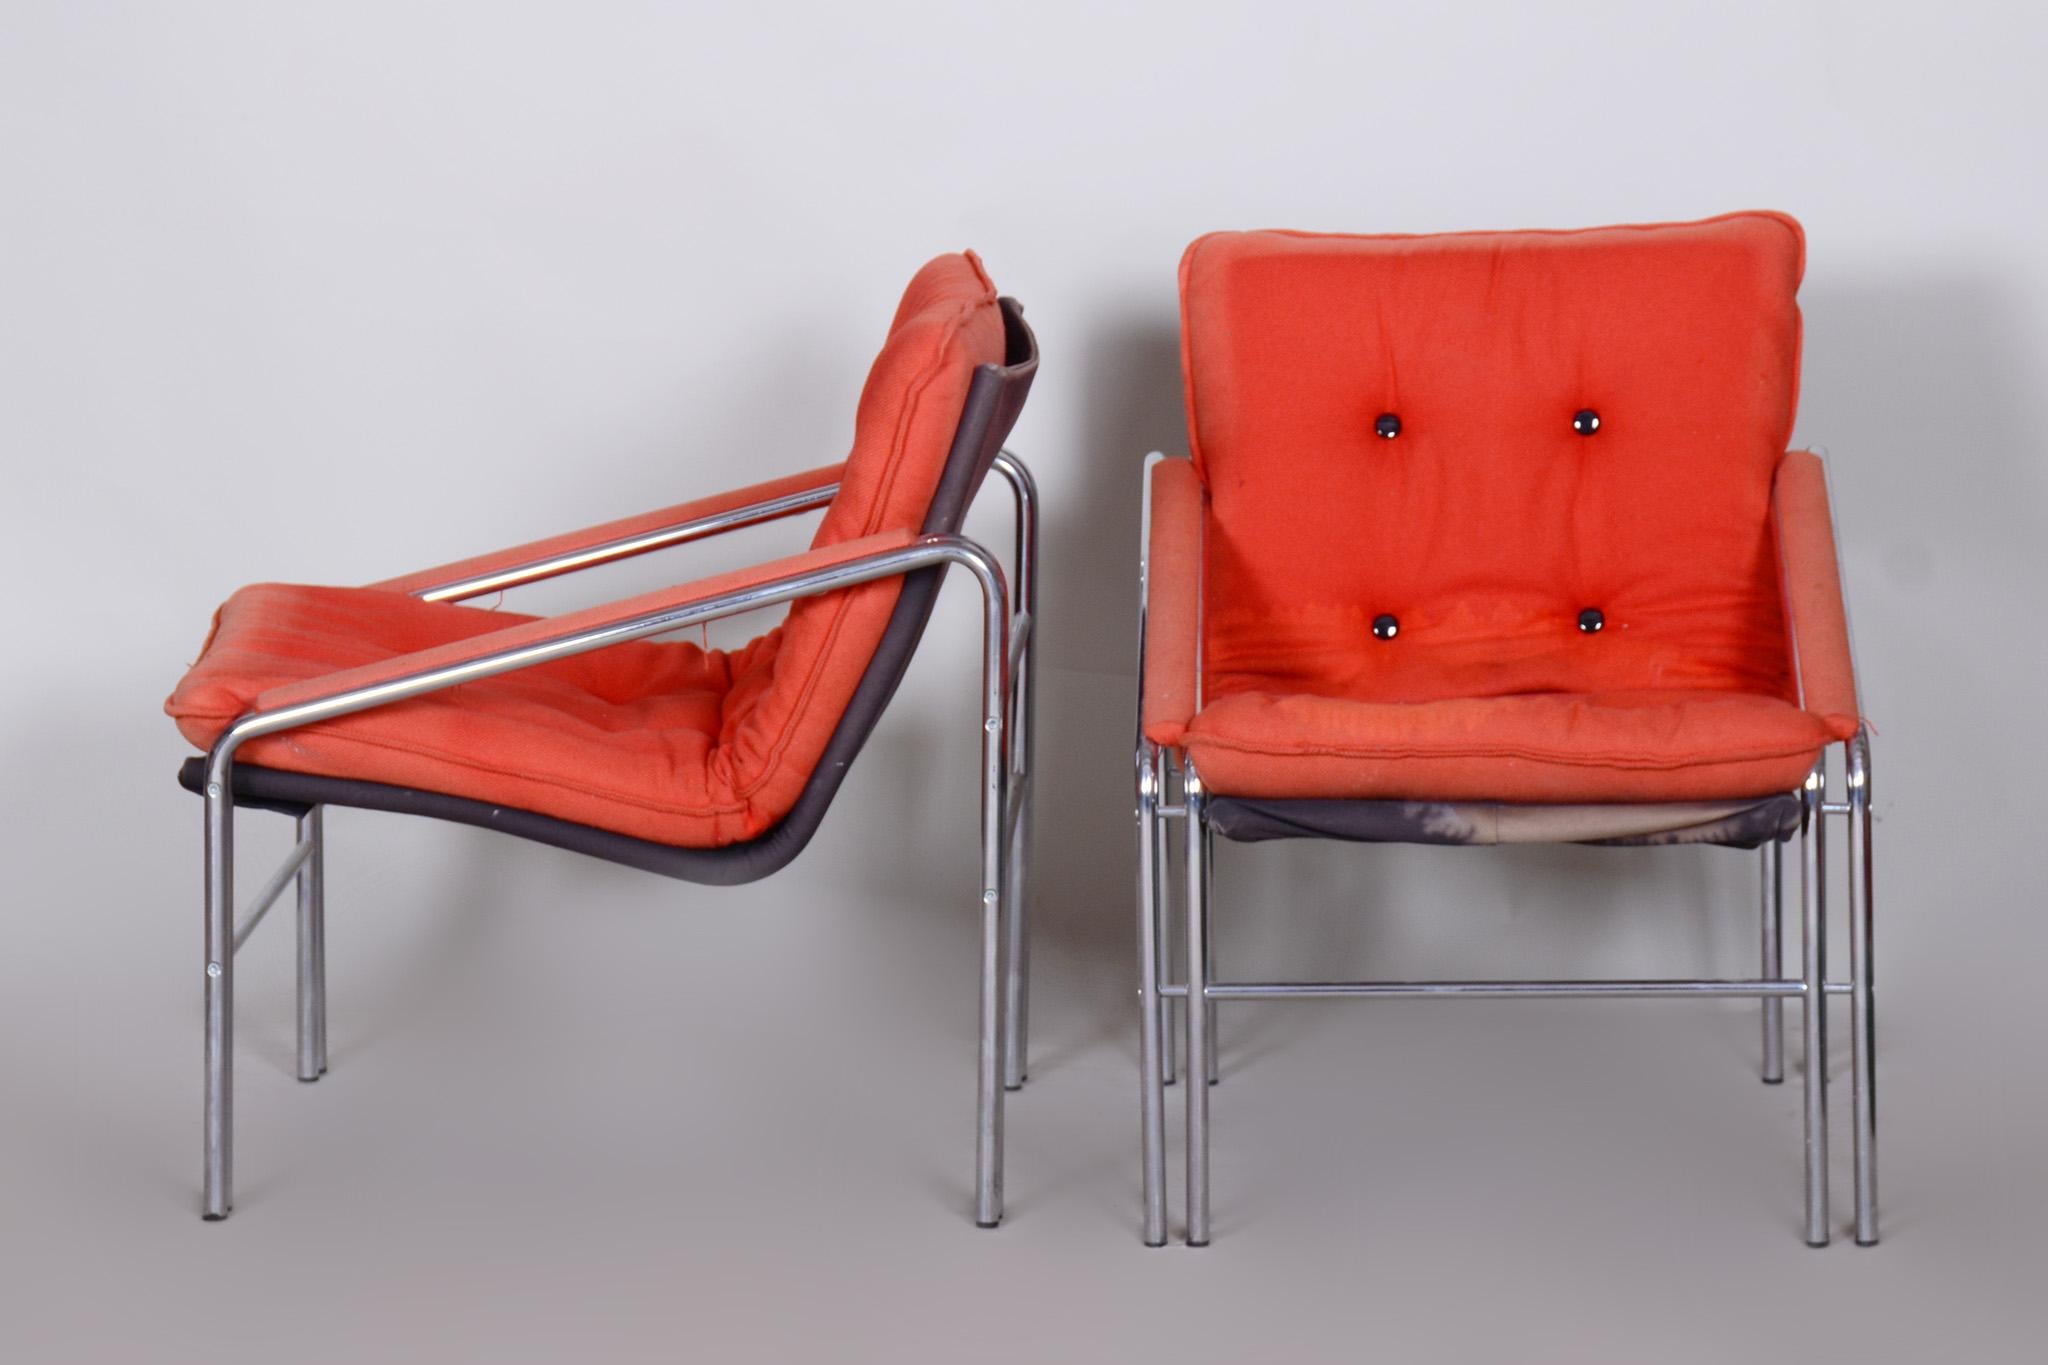 Paire de fauteuils originaux du milieu du siècle dernier

Source : Tchécoslovaquie 
Période : 1960-1969
MATERIAL : Acier chromé, Tissu

Très bien conservé.
Le chrome est en excellent état.
Les tissus d'ameublement ont été nettoyés par des